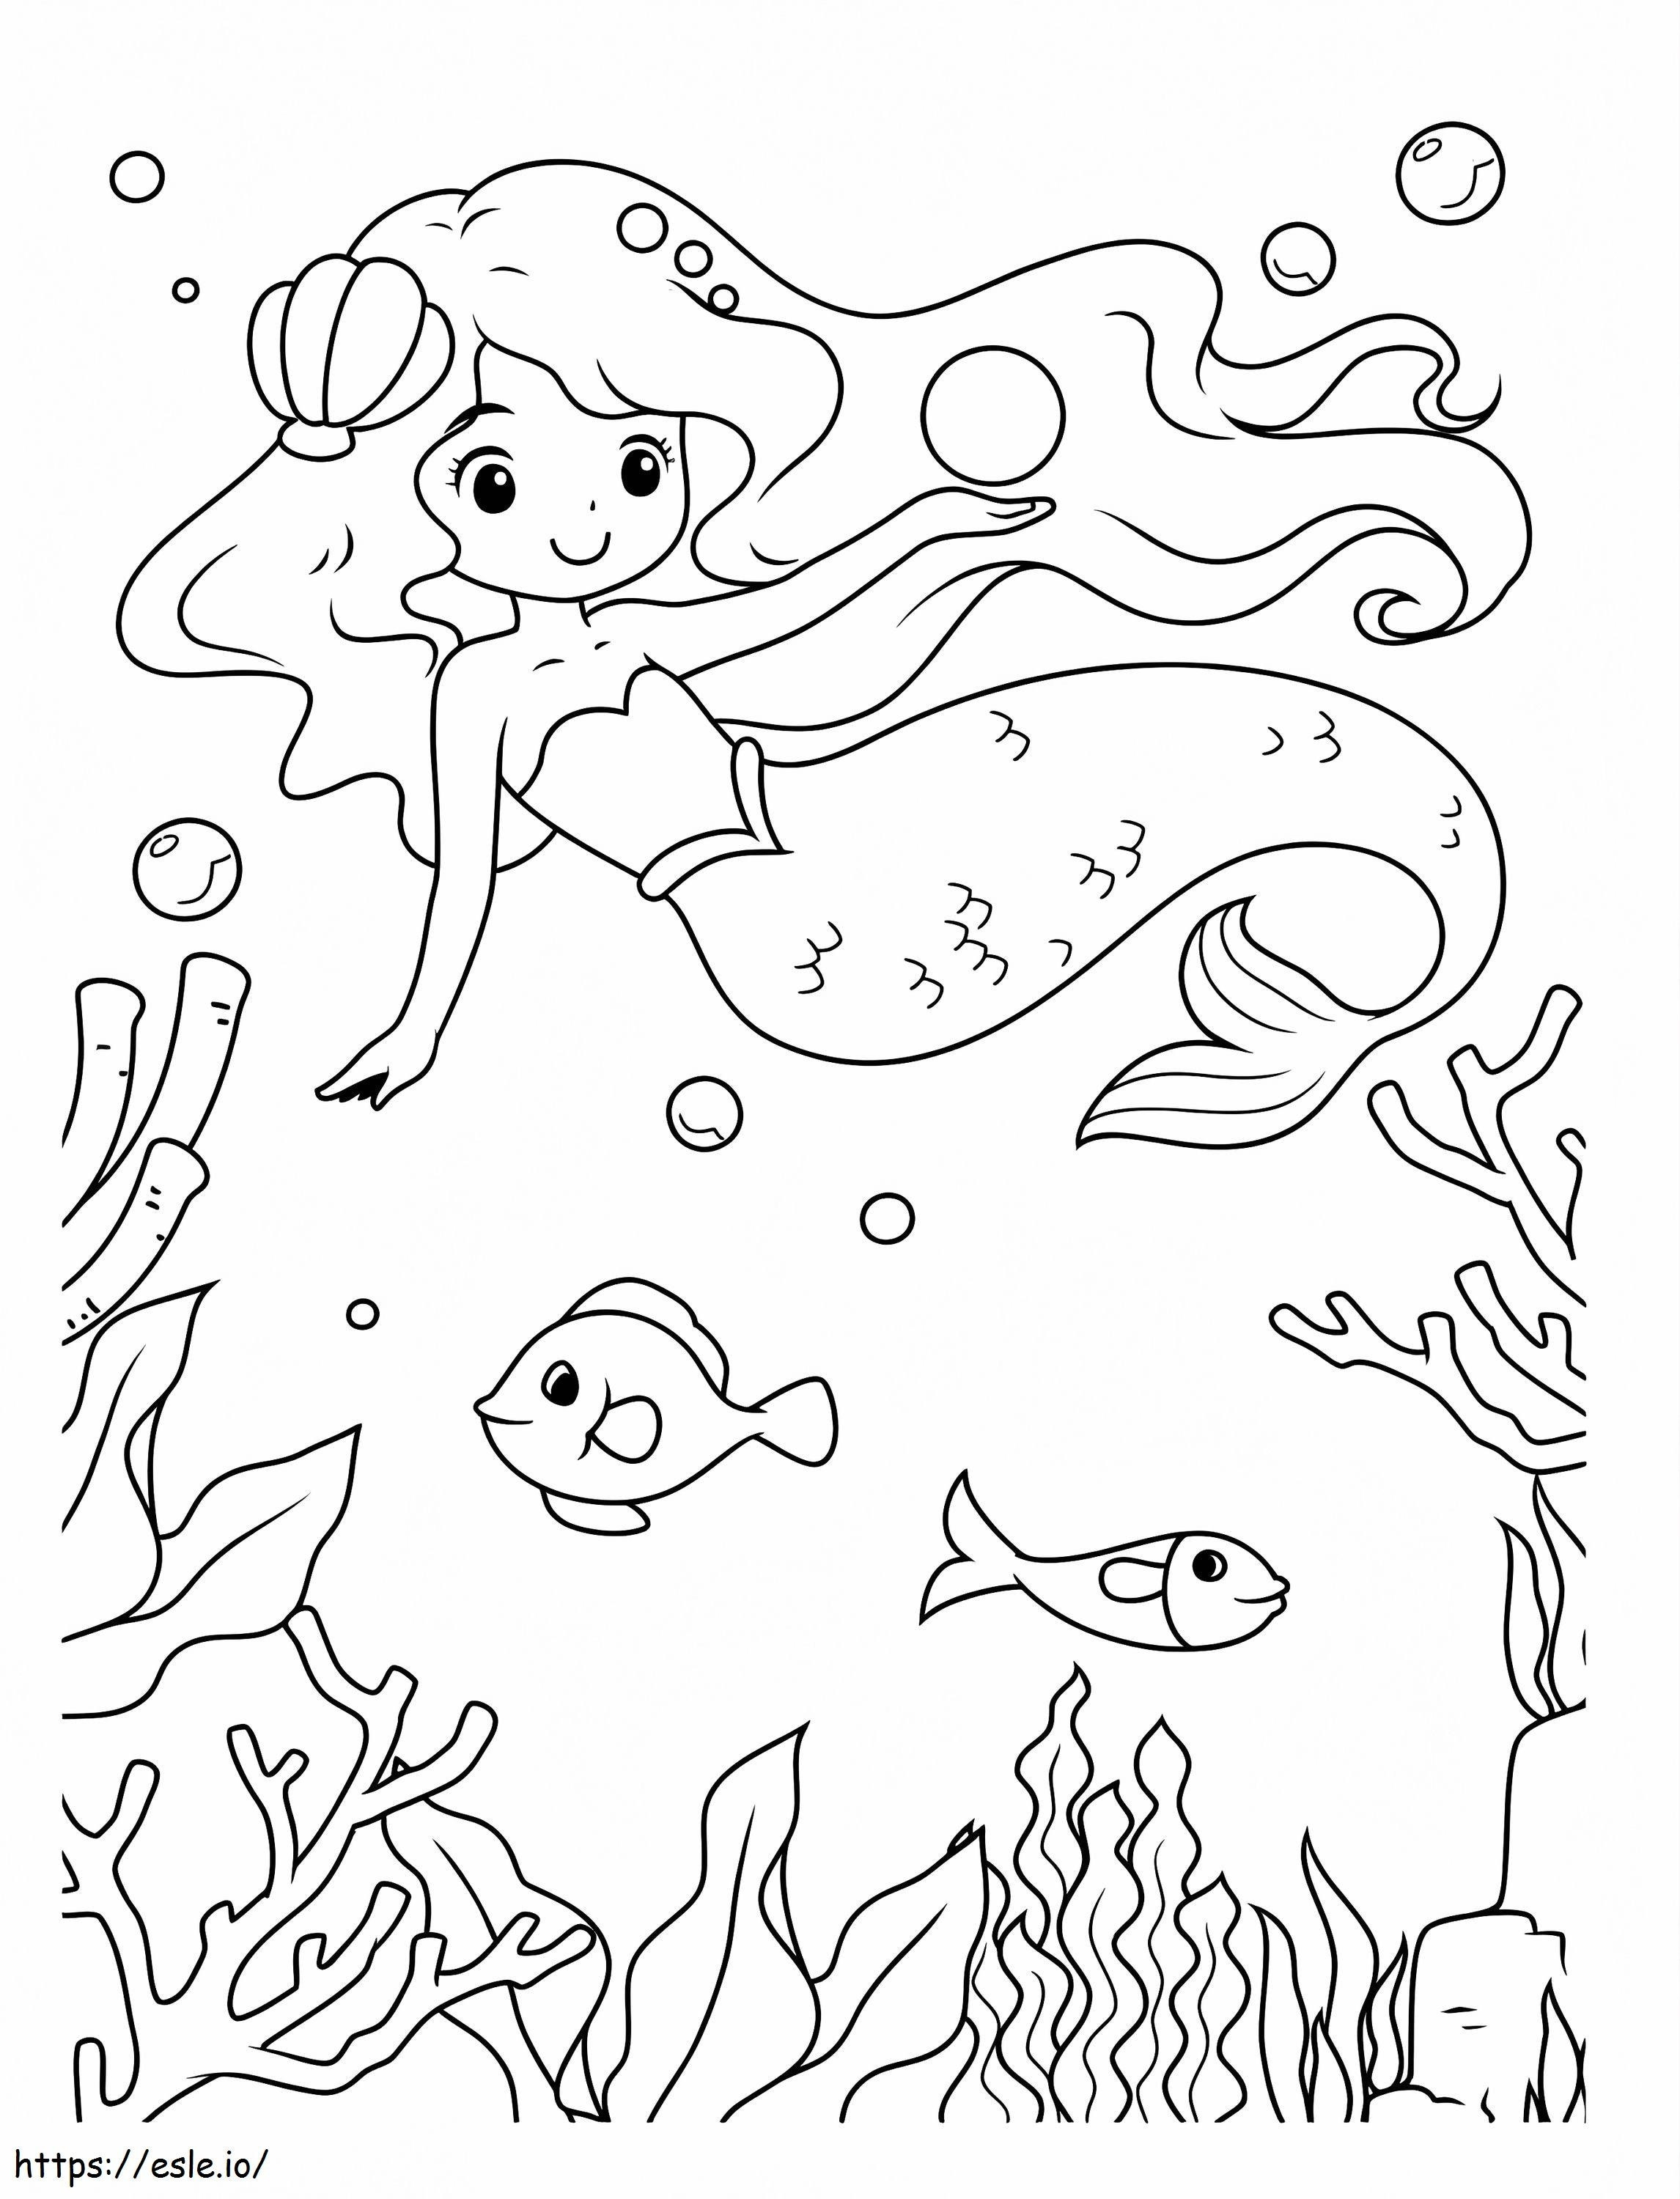 Meerjungfrau und Fische ausmalbilder